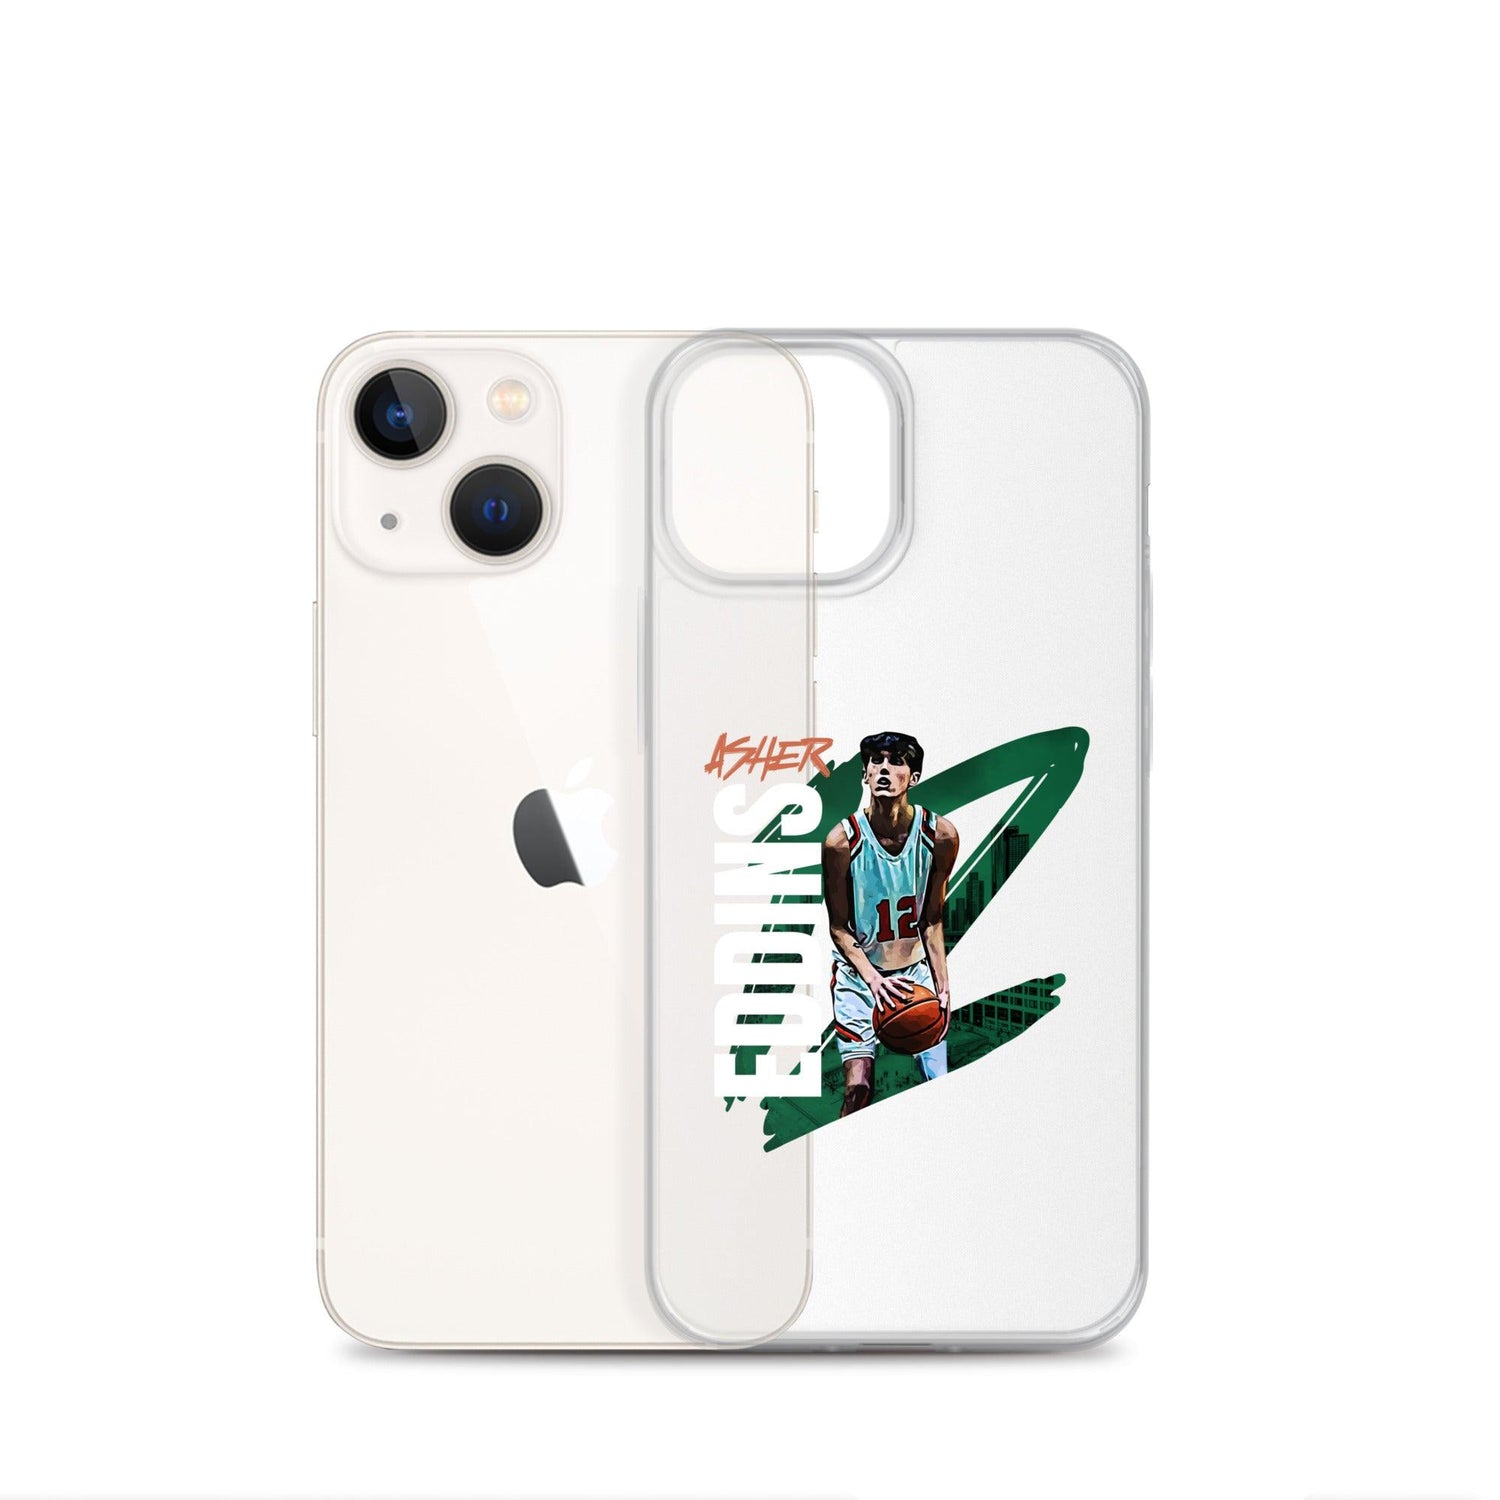 Asher Eddins "Gameday" iPhone® - Fan Arch